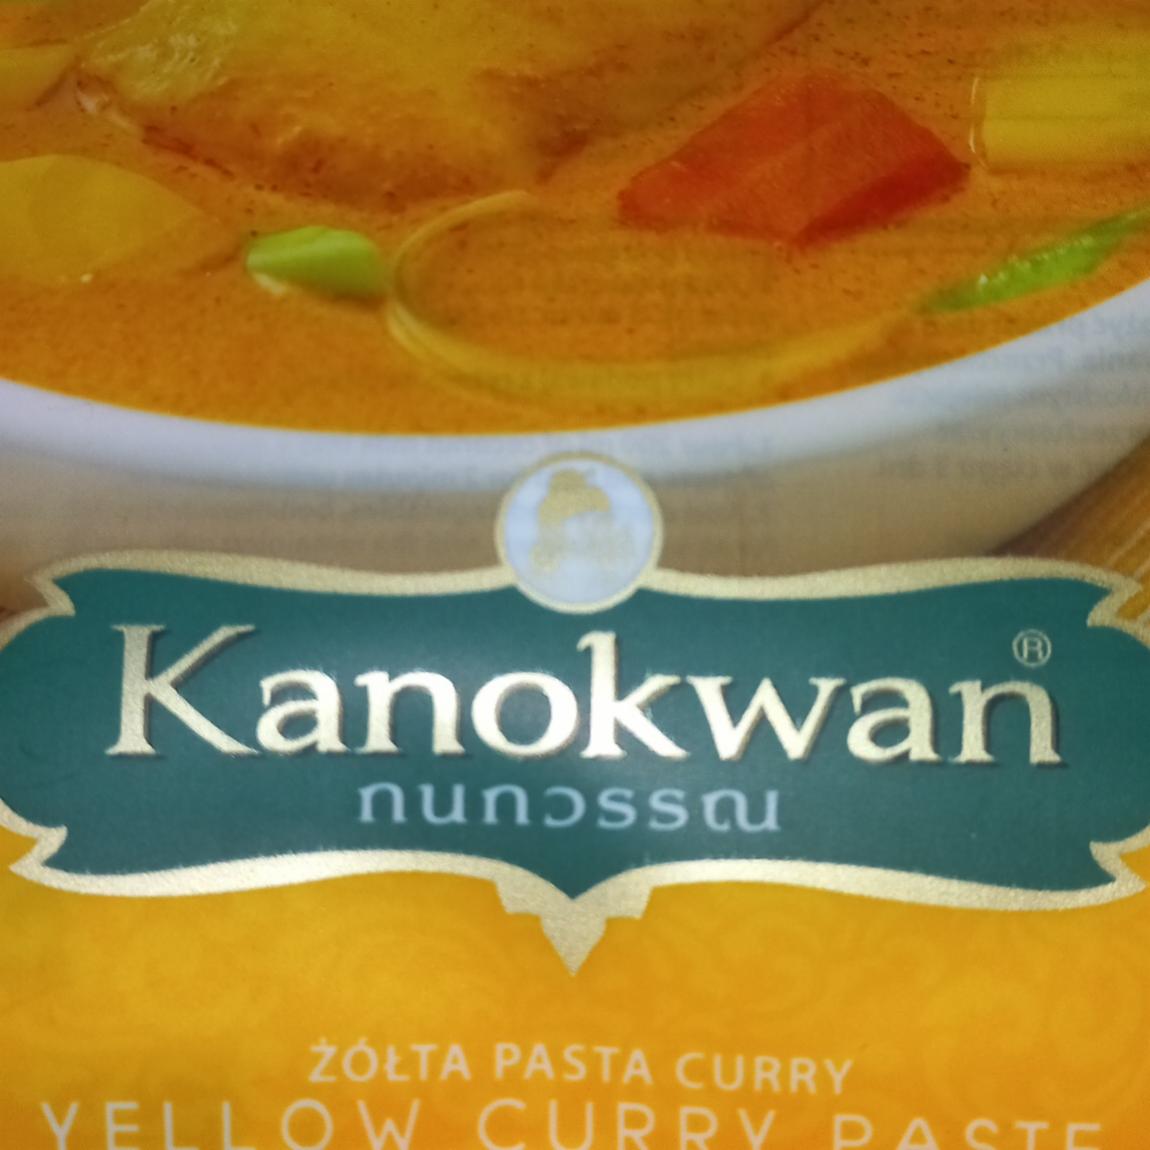 Zdjęcia - Żółta pasta curry Kanokwan